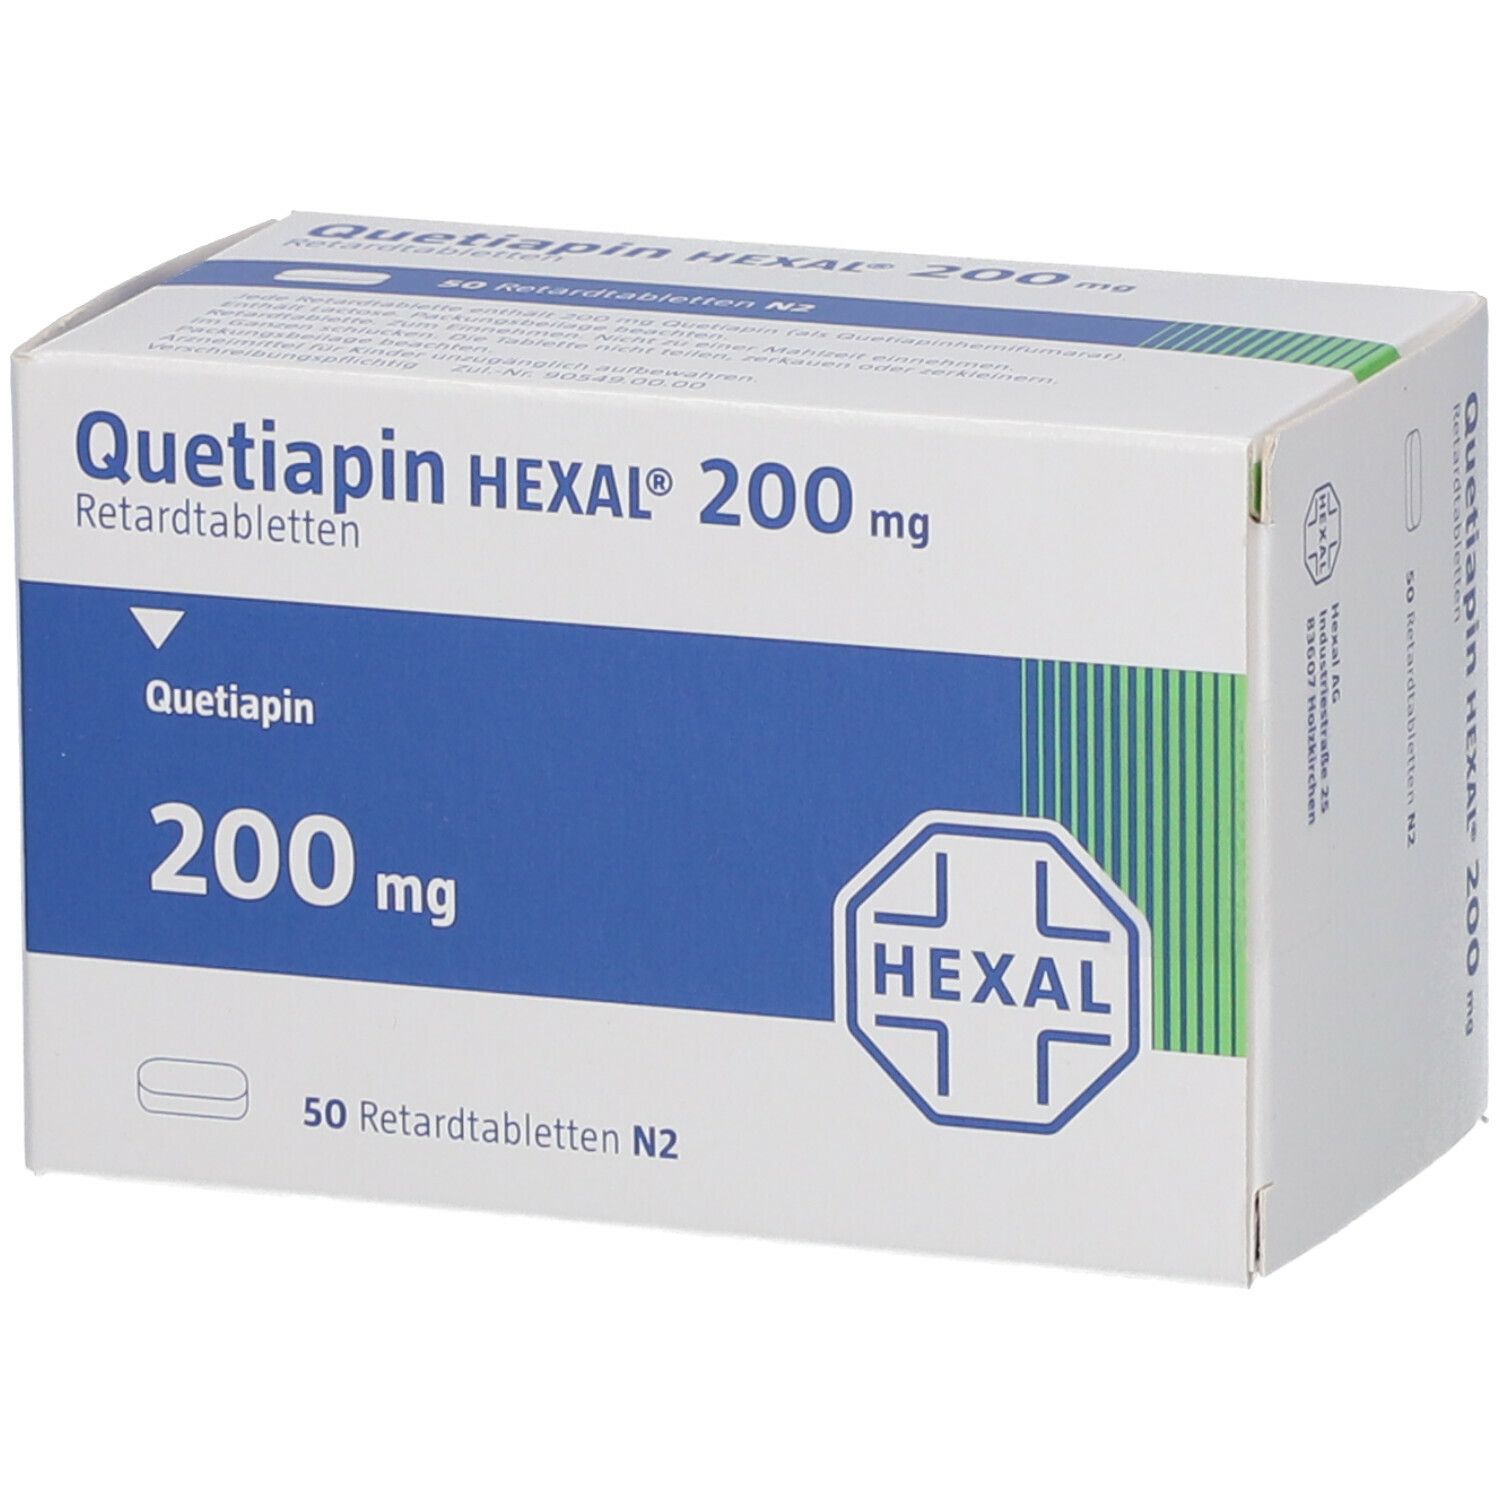 Quetiapin HEXAL® 200 mg